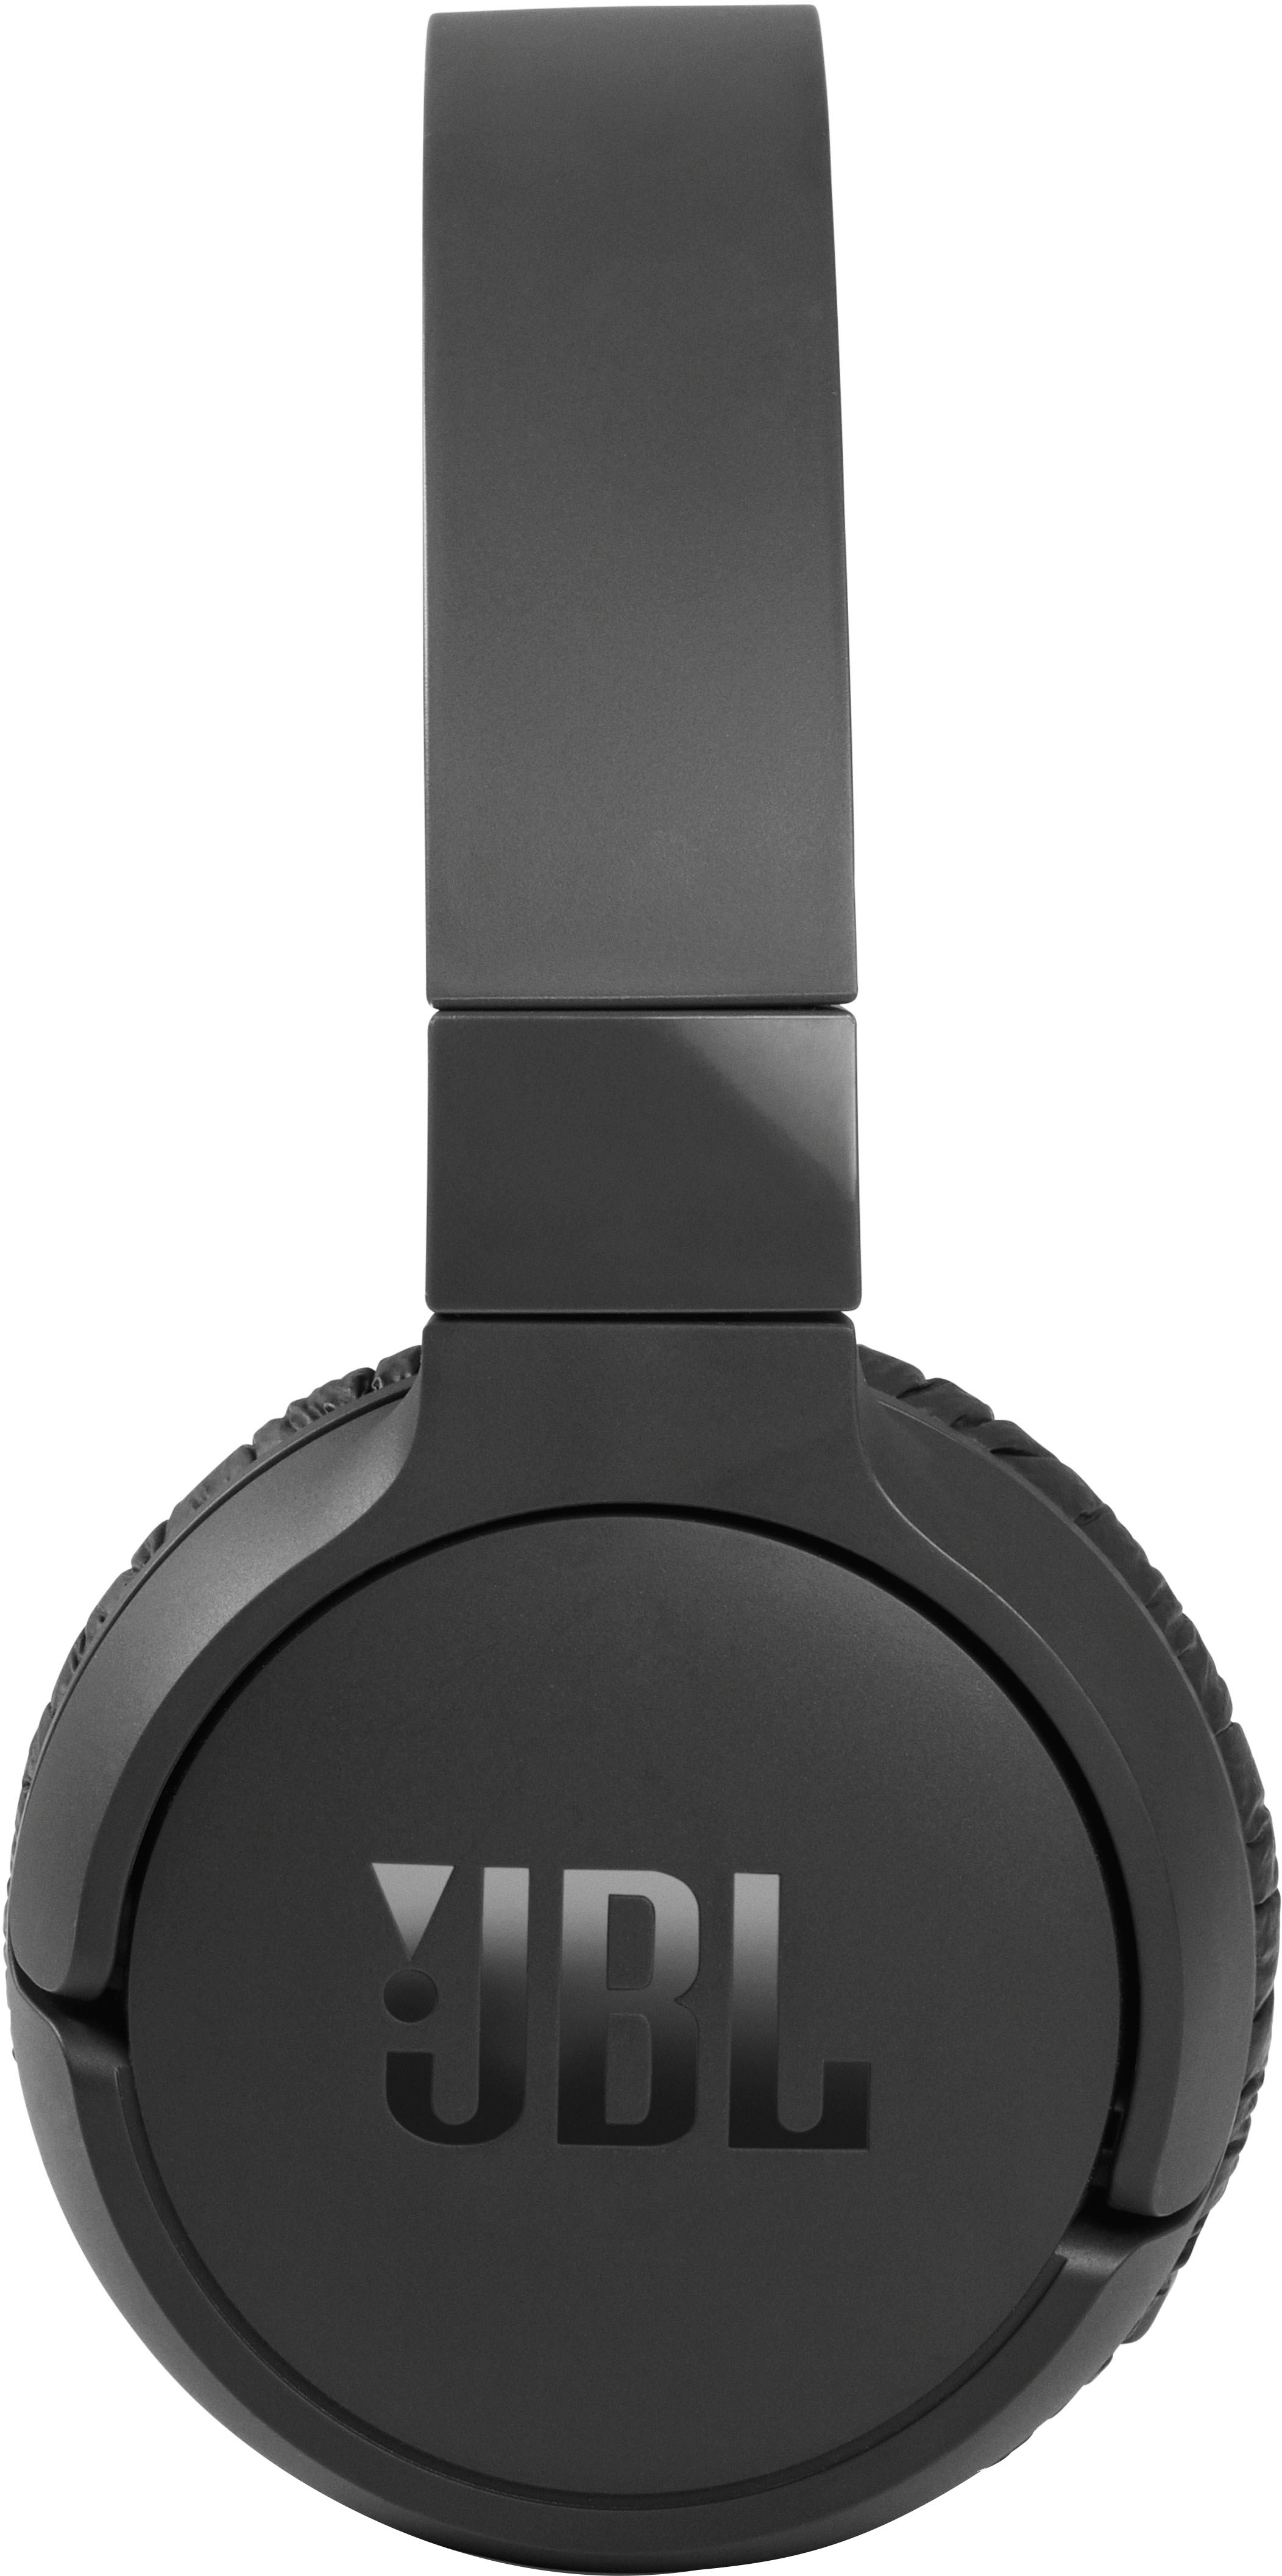 JBL Tune BEAM == ANC Wireless Bluetooth Headphones Black JBLTBEAMBLKAM ==  NEW